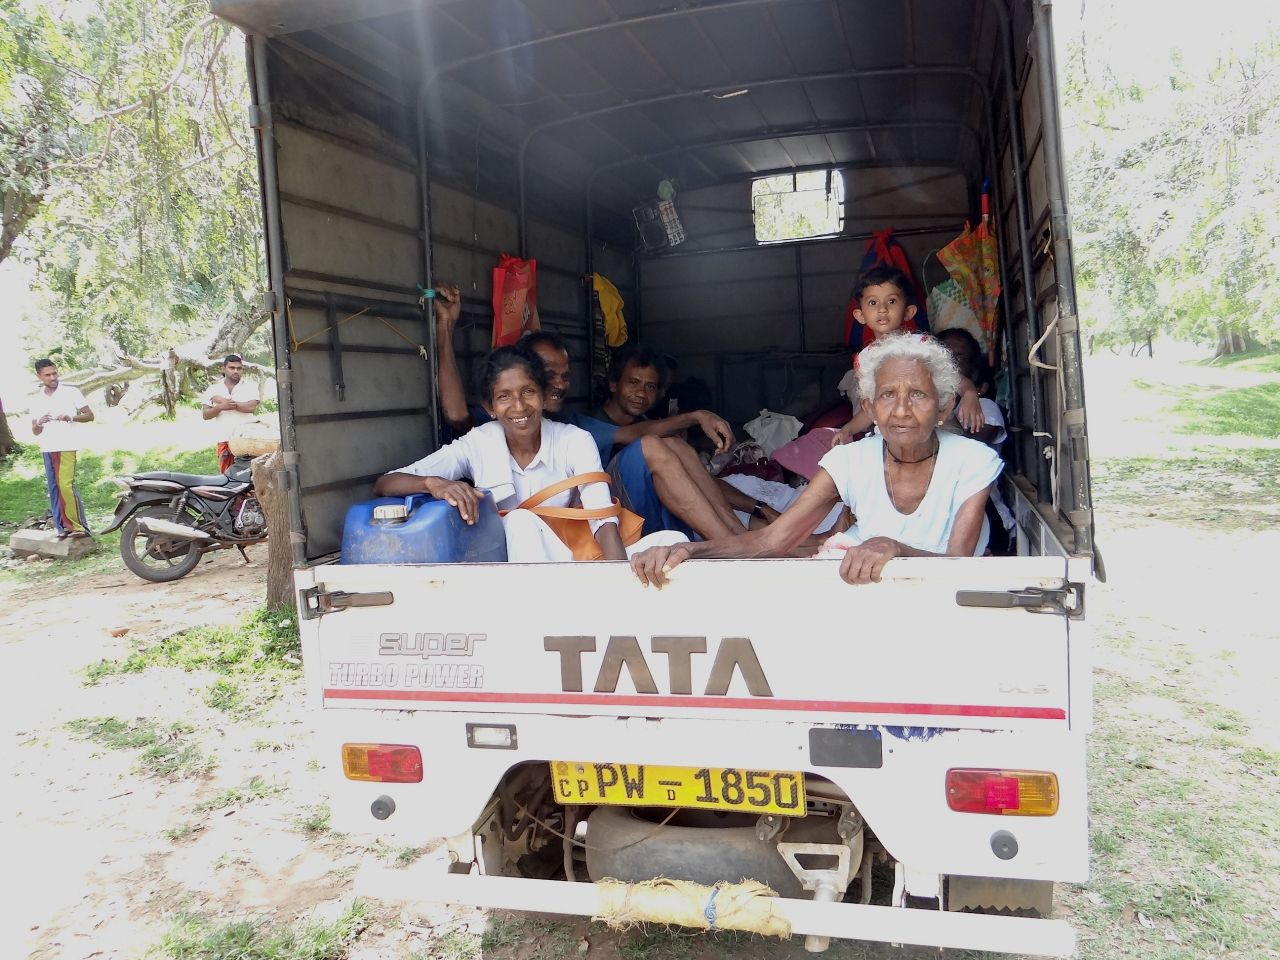 У местных жителей нет возможности путешествовать в кондиционированных автобусах, но они очень любят путешествовать по острову, посещая святые места. - Шри-Ланка 2017. Часть 2.